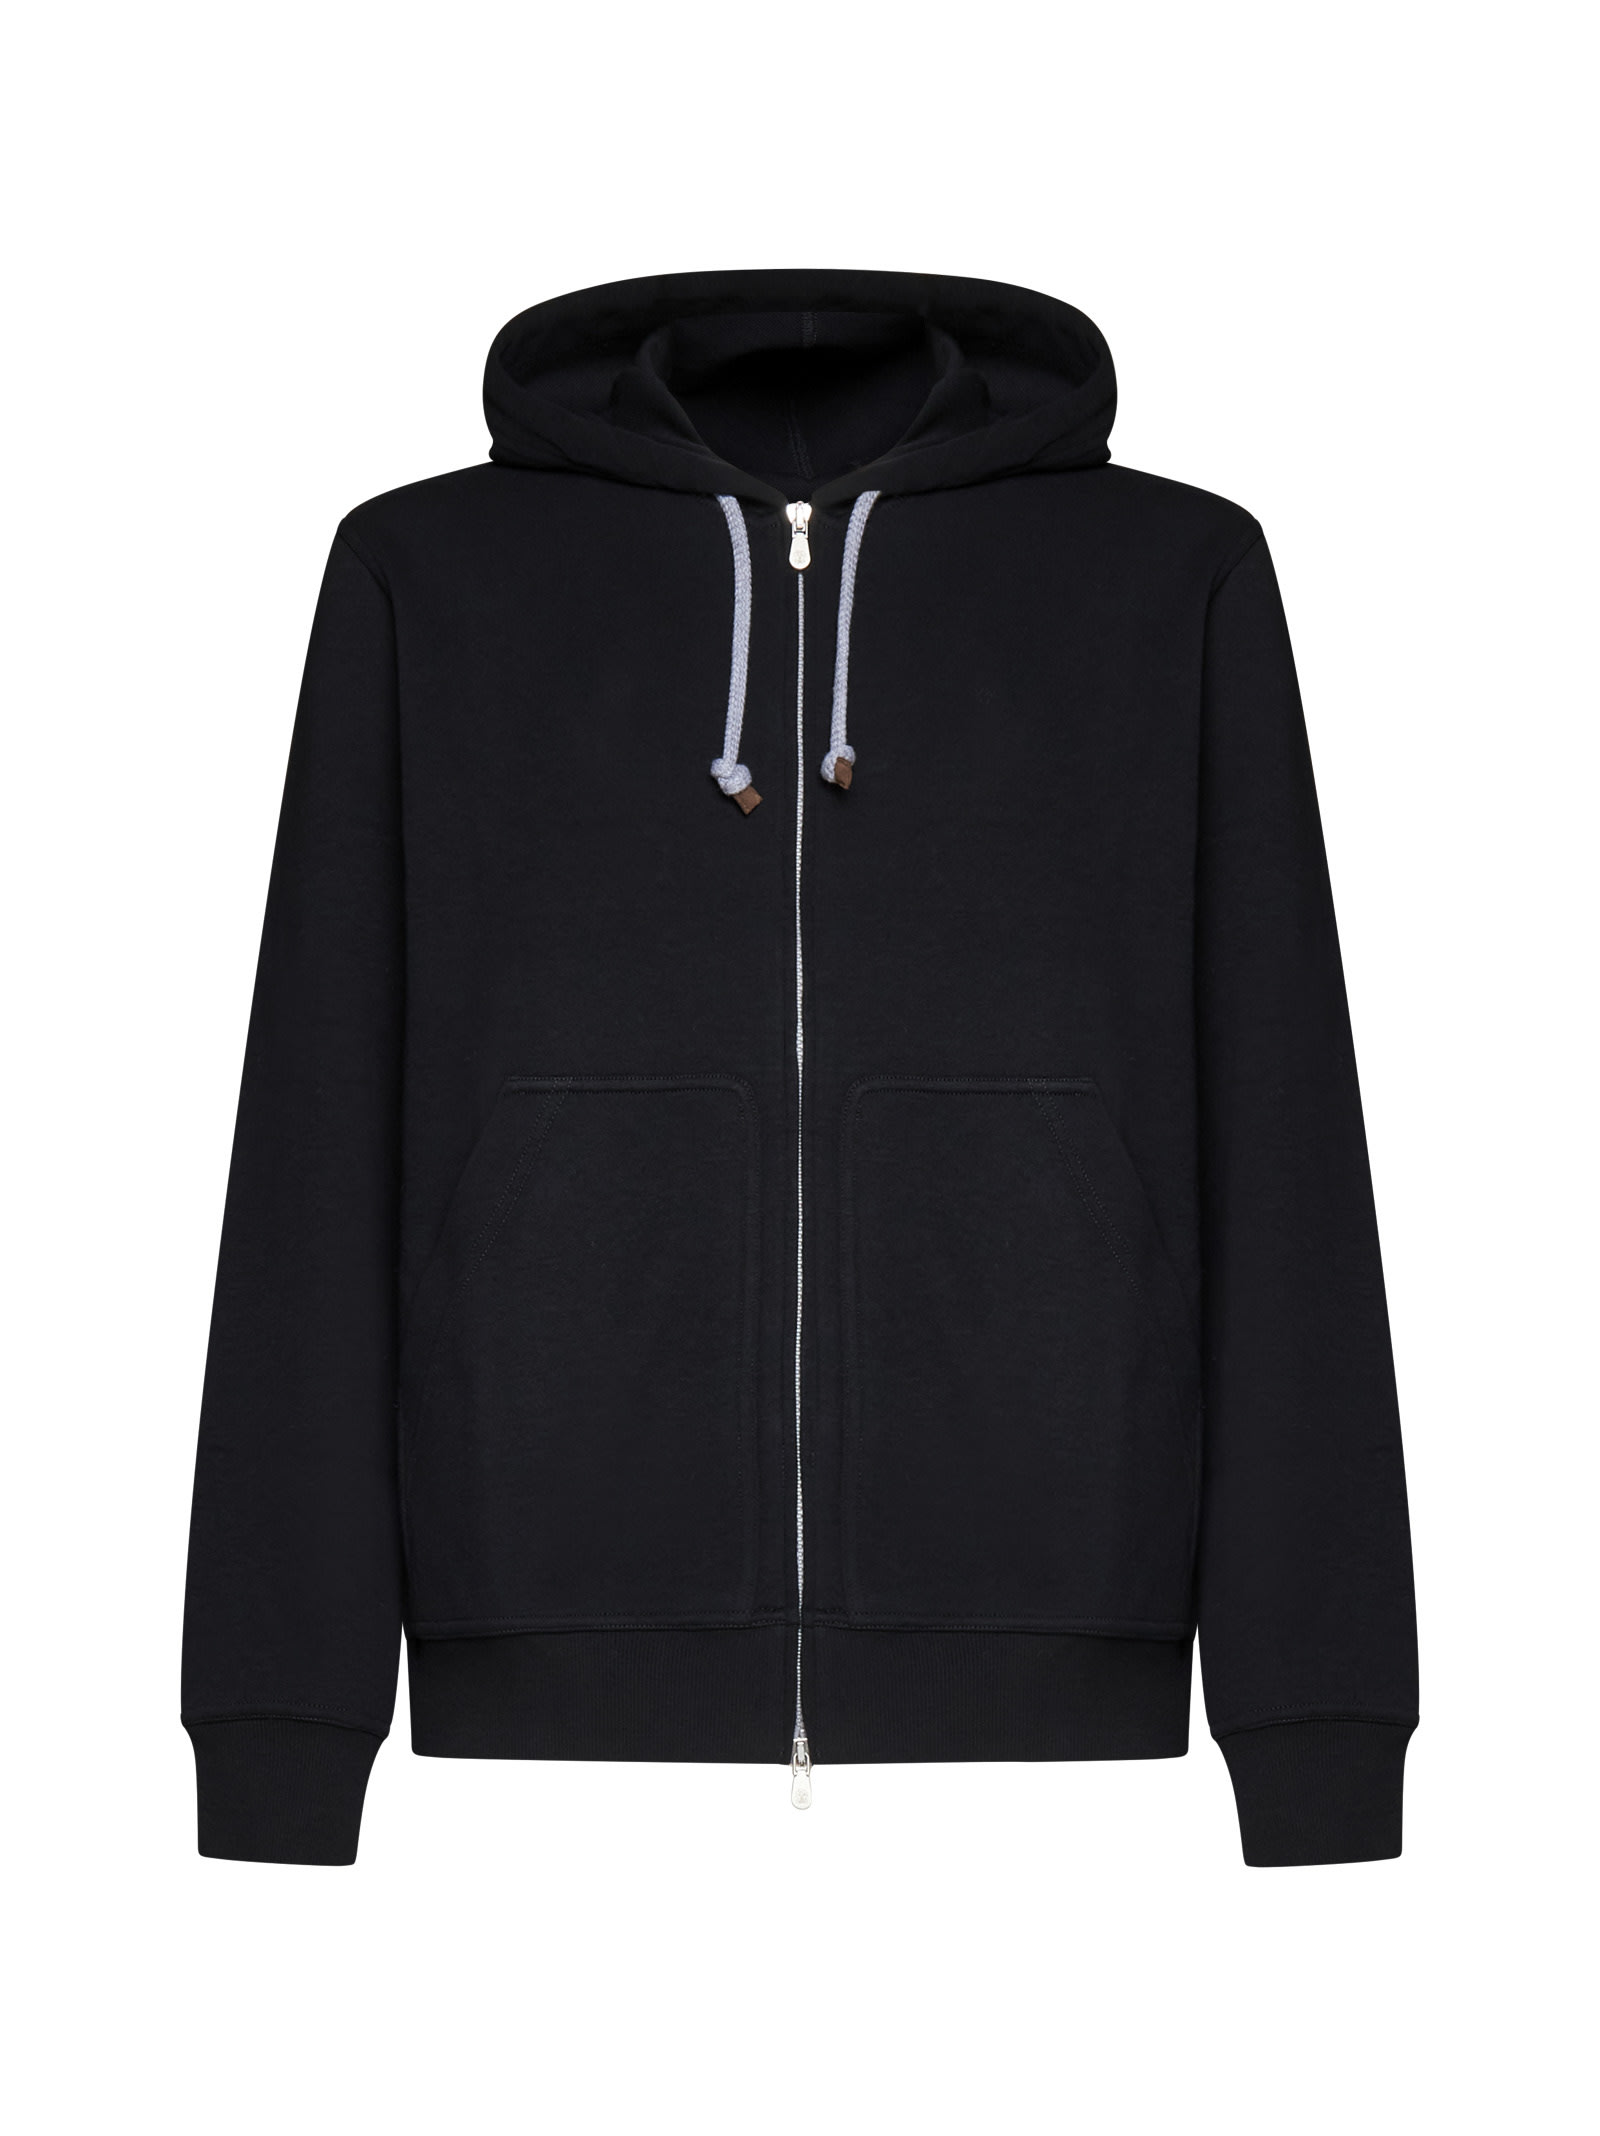 Techno Cotton Interlock Zip-front Hooded Sweatshirt